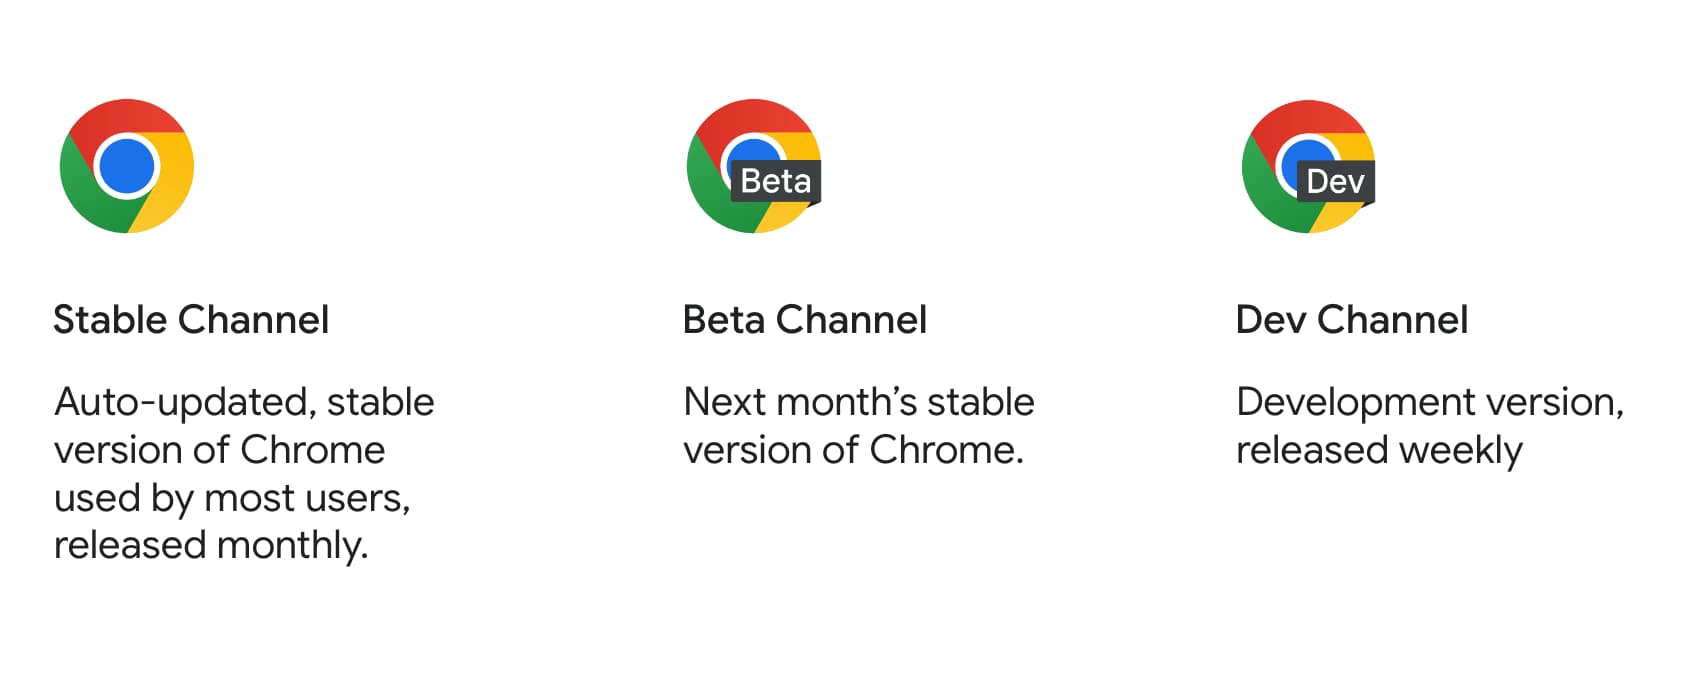 Le icone dei prodotti di Chrome stabile, beta e Dev insieme alla relativa descrizione.